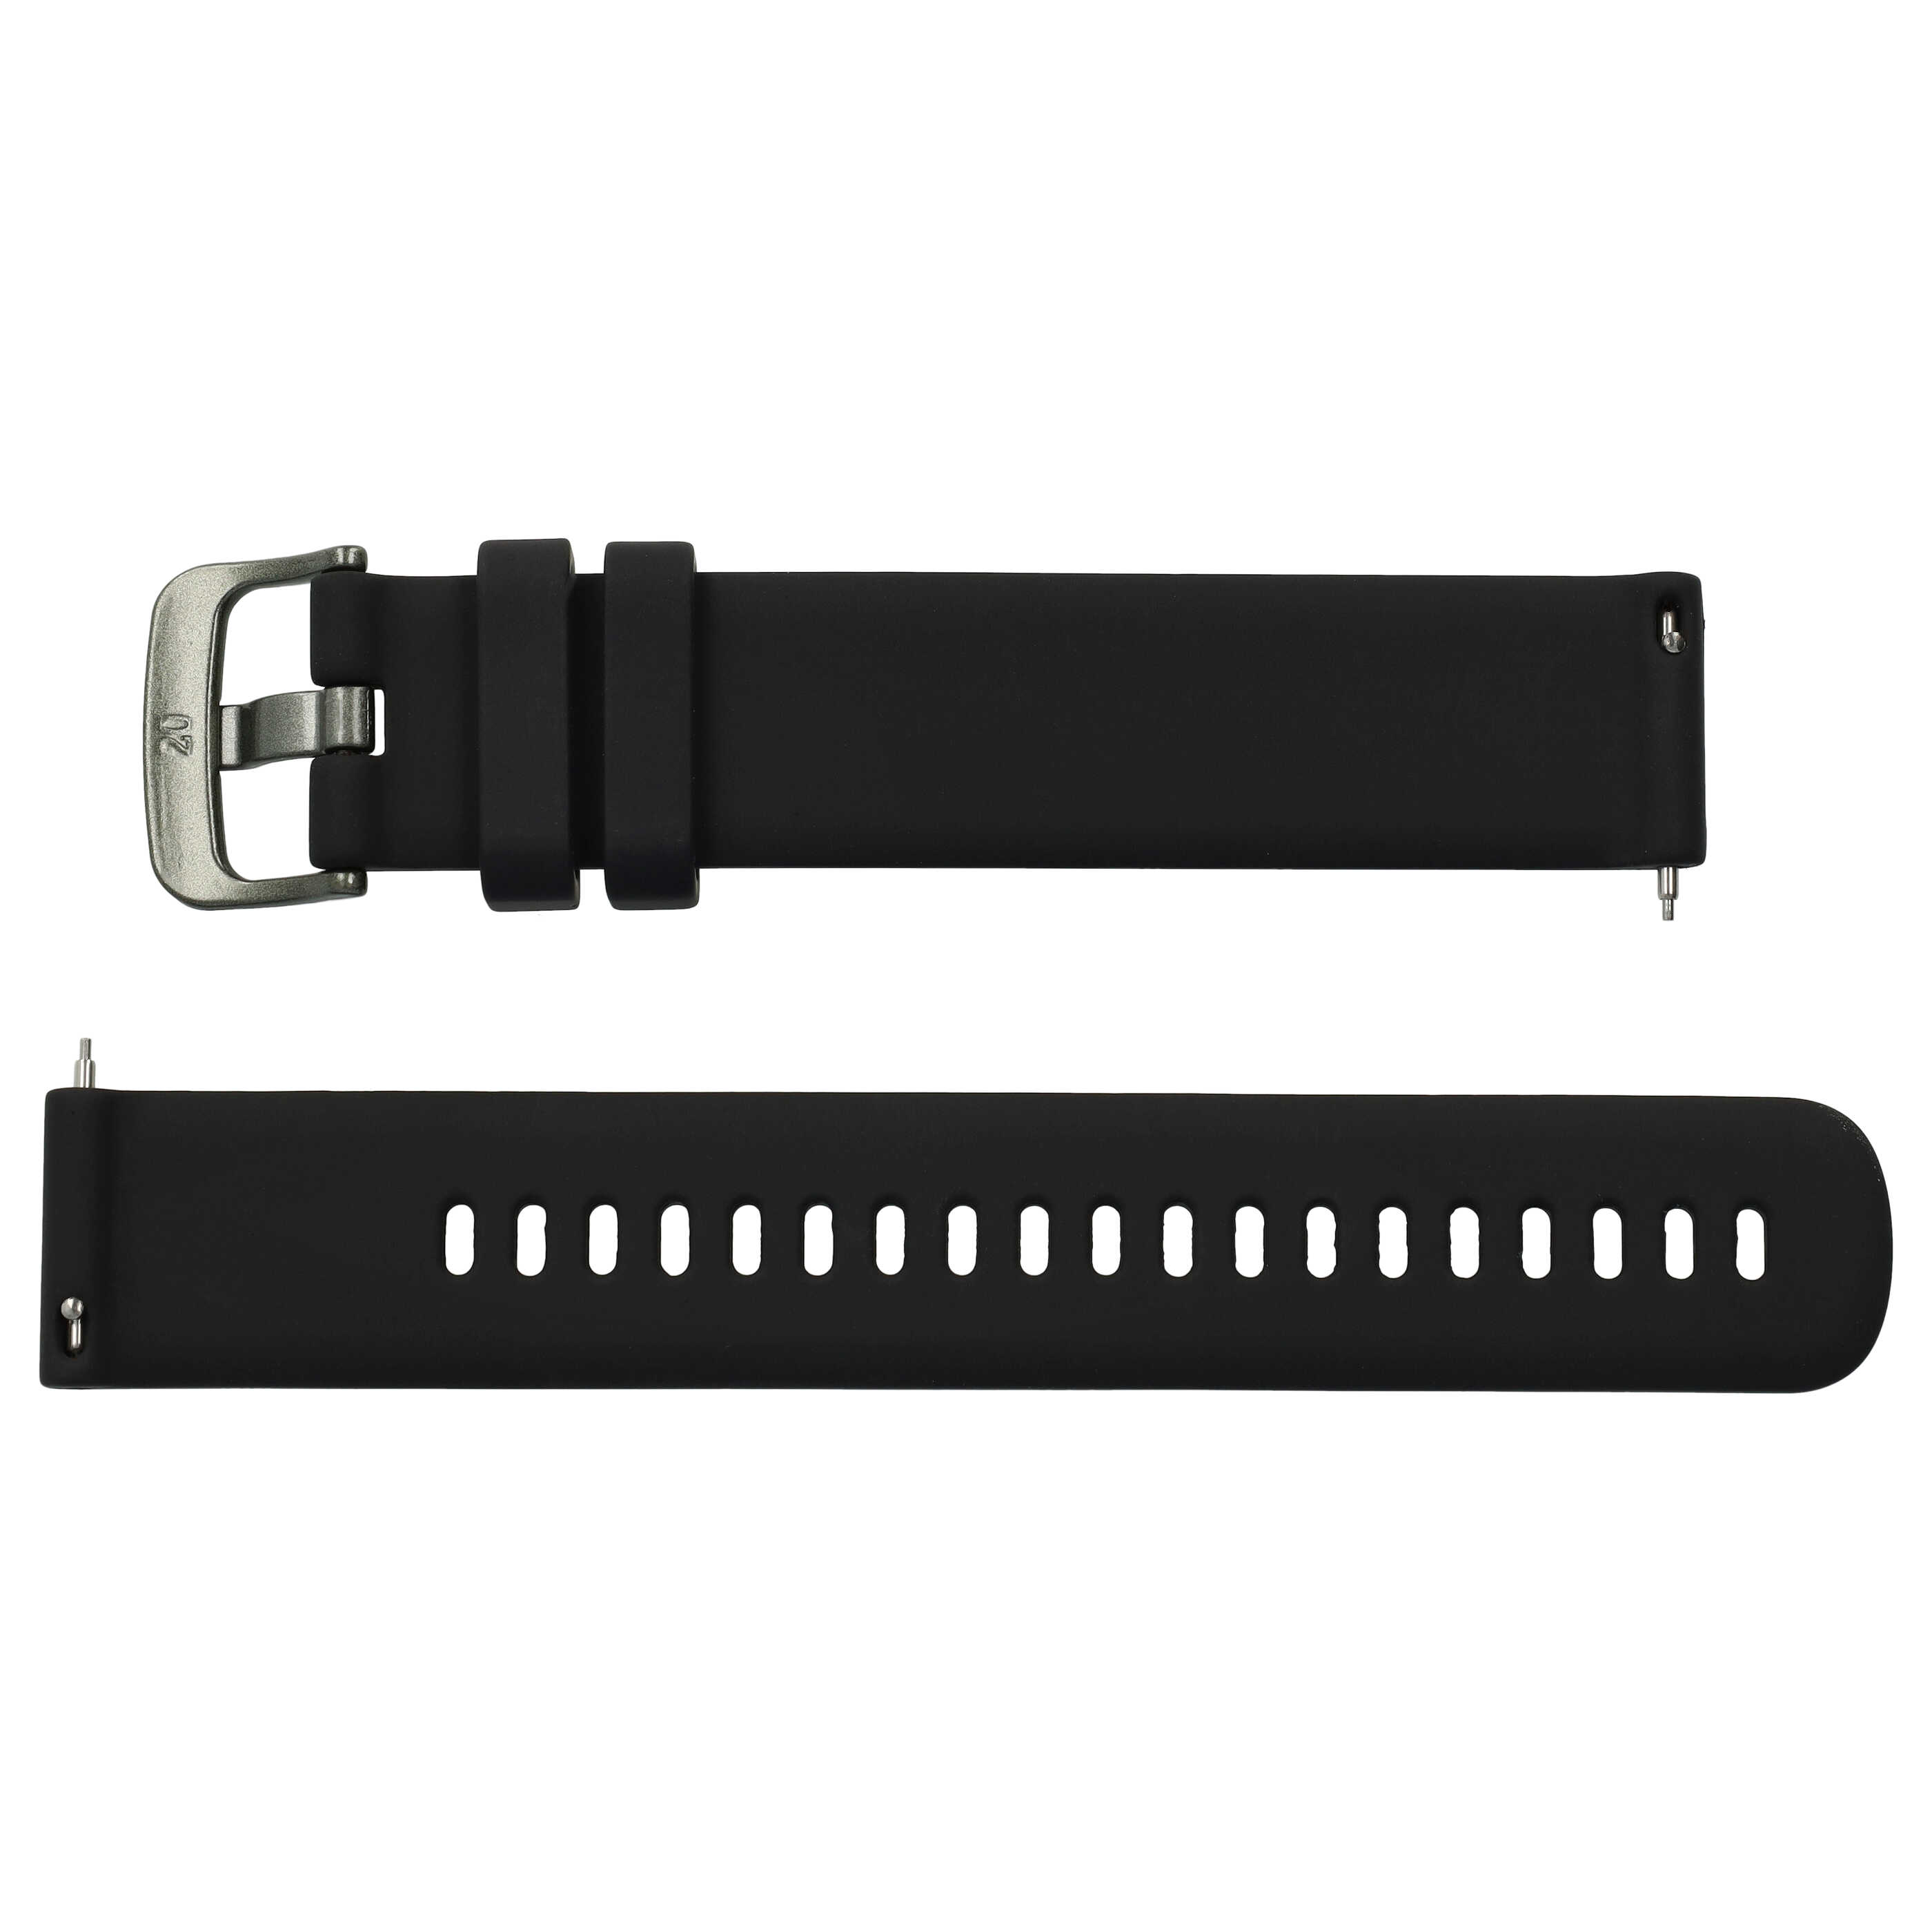 Armband L für Samsung Galaxy Watch Smartwatch - Bis 260 mm Gelenkumfang, Silikon, schwarz